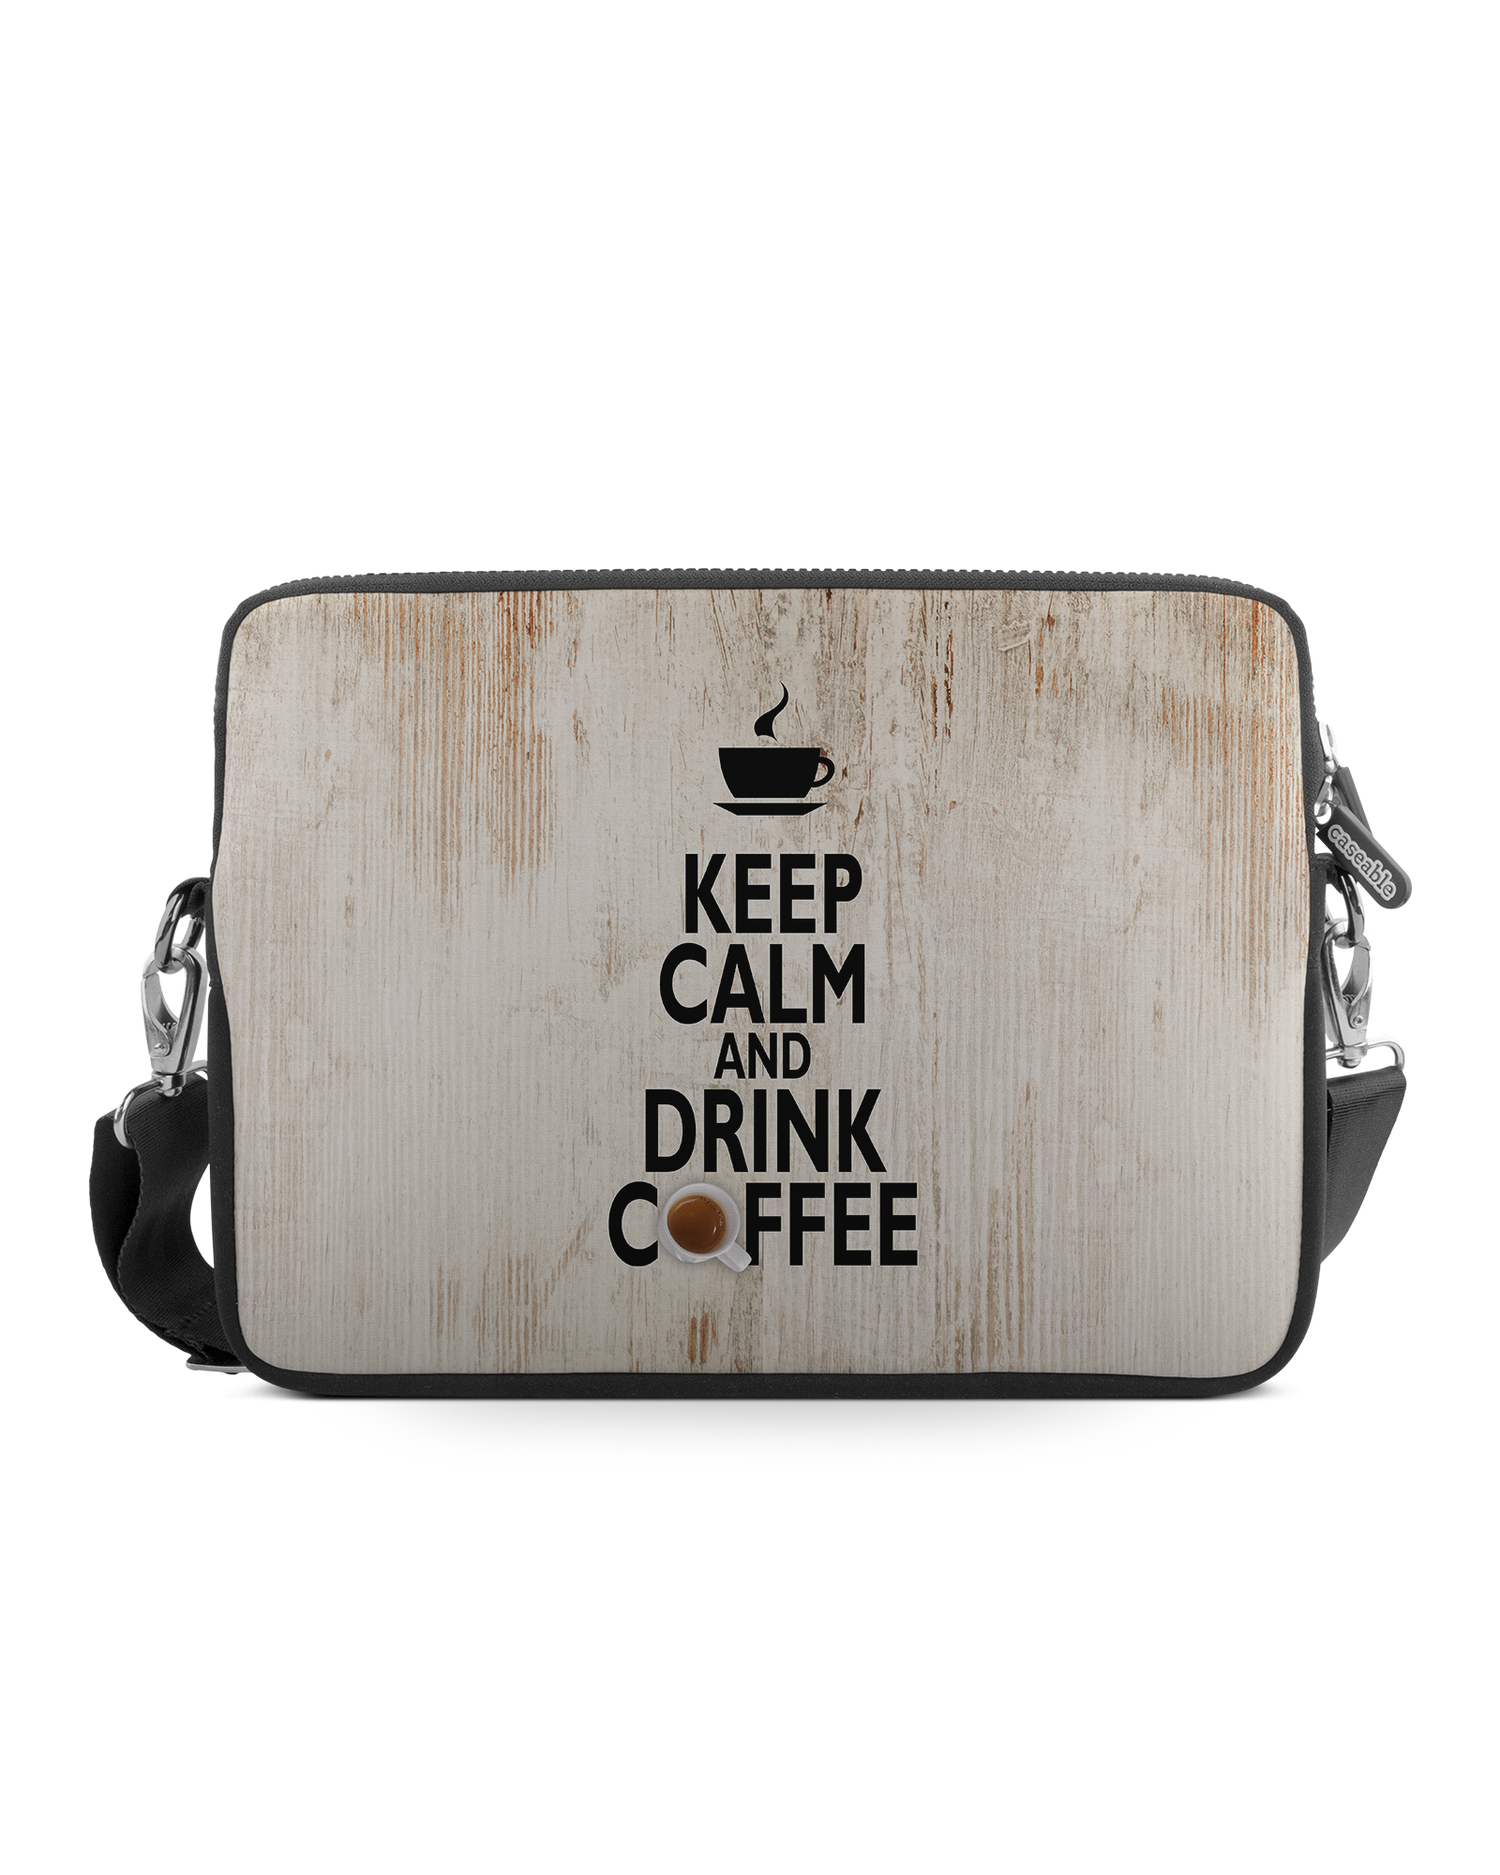 Drink Coffee Premium Laptoptasche 17 Zoll: Vorderansicht